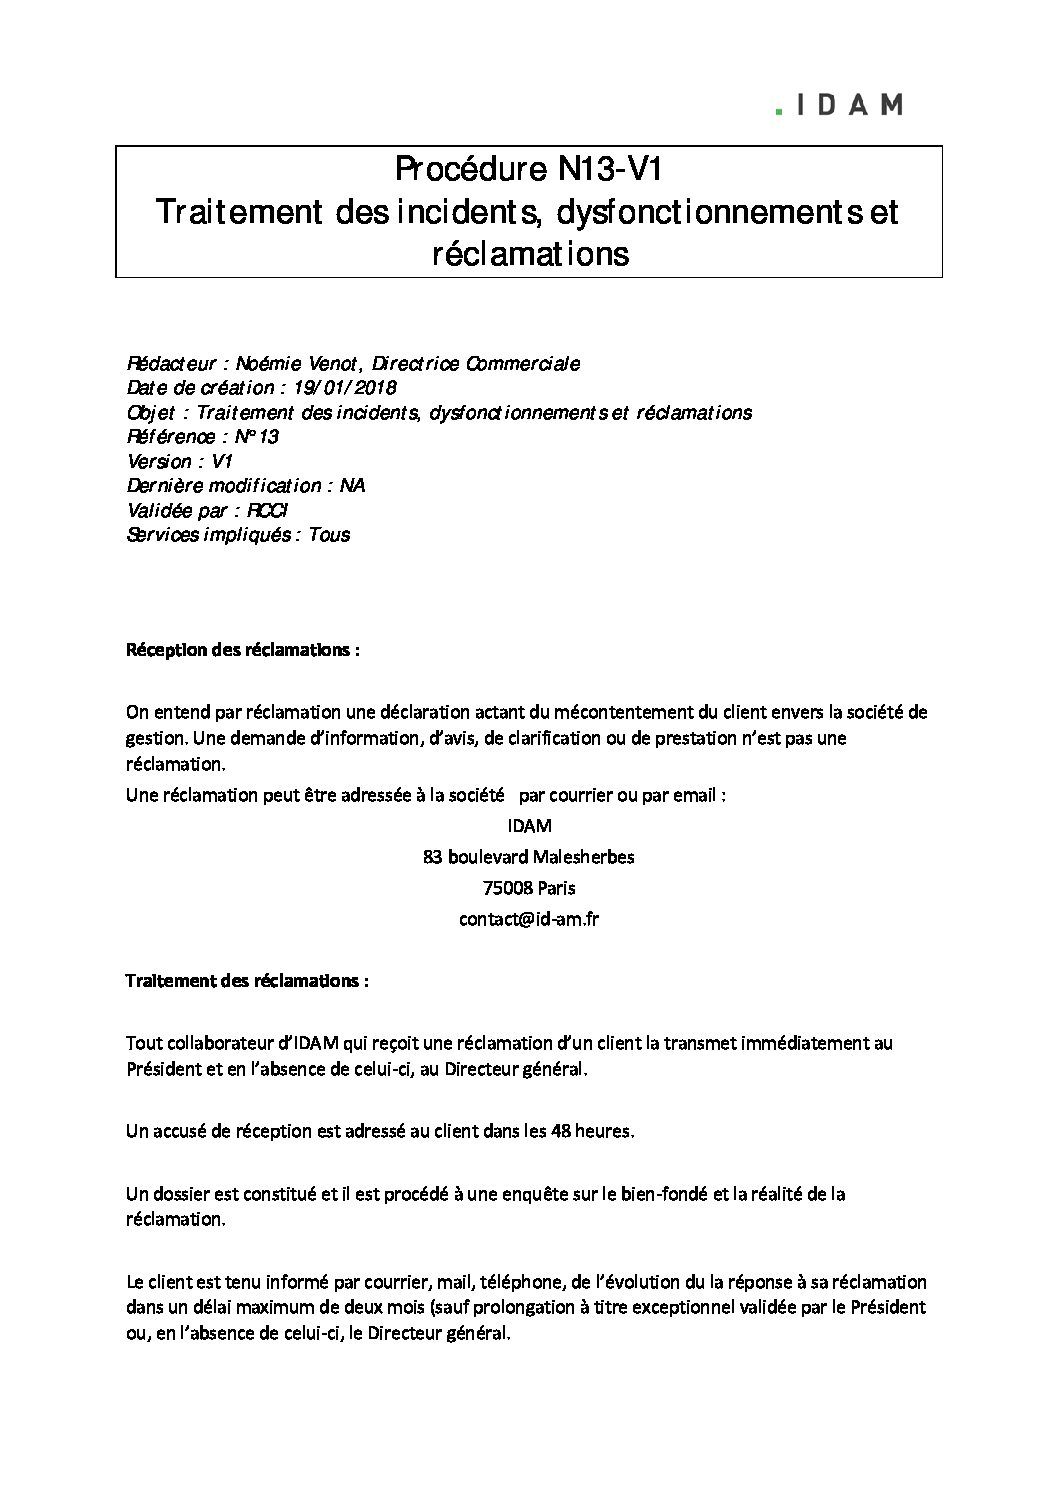 Procedure-N13-V1-Traitement-des-incidents-dysfonctionnements-et-réclamations-1-pdf